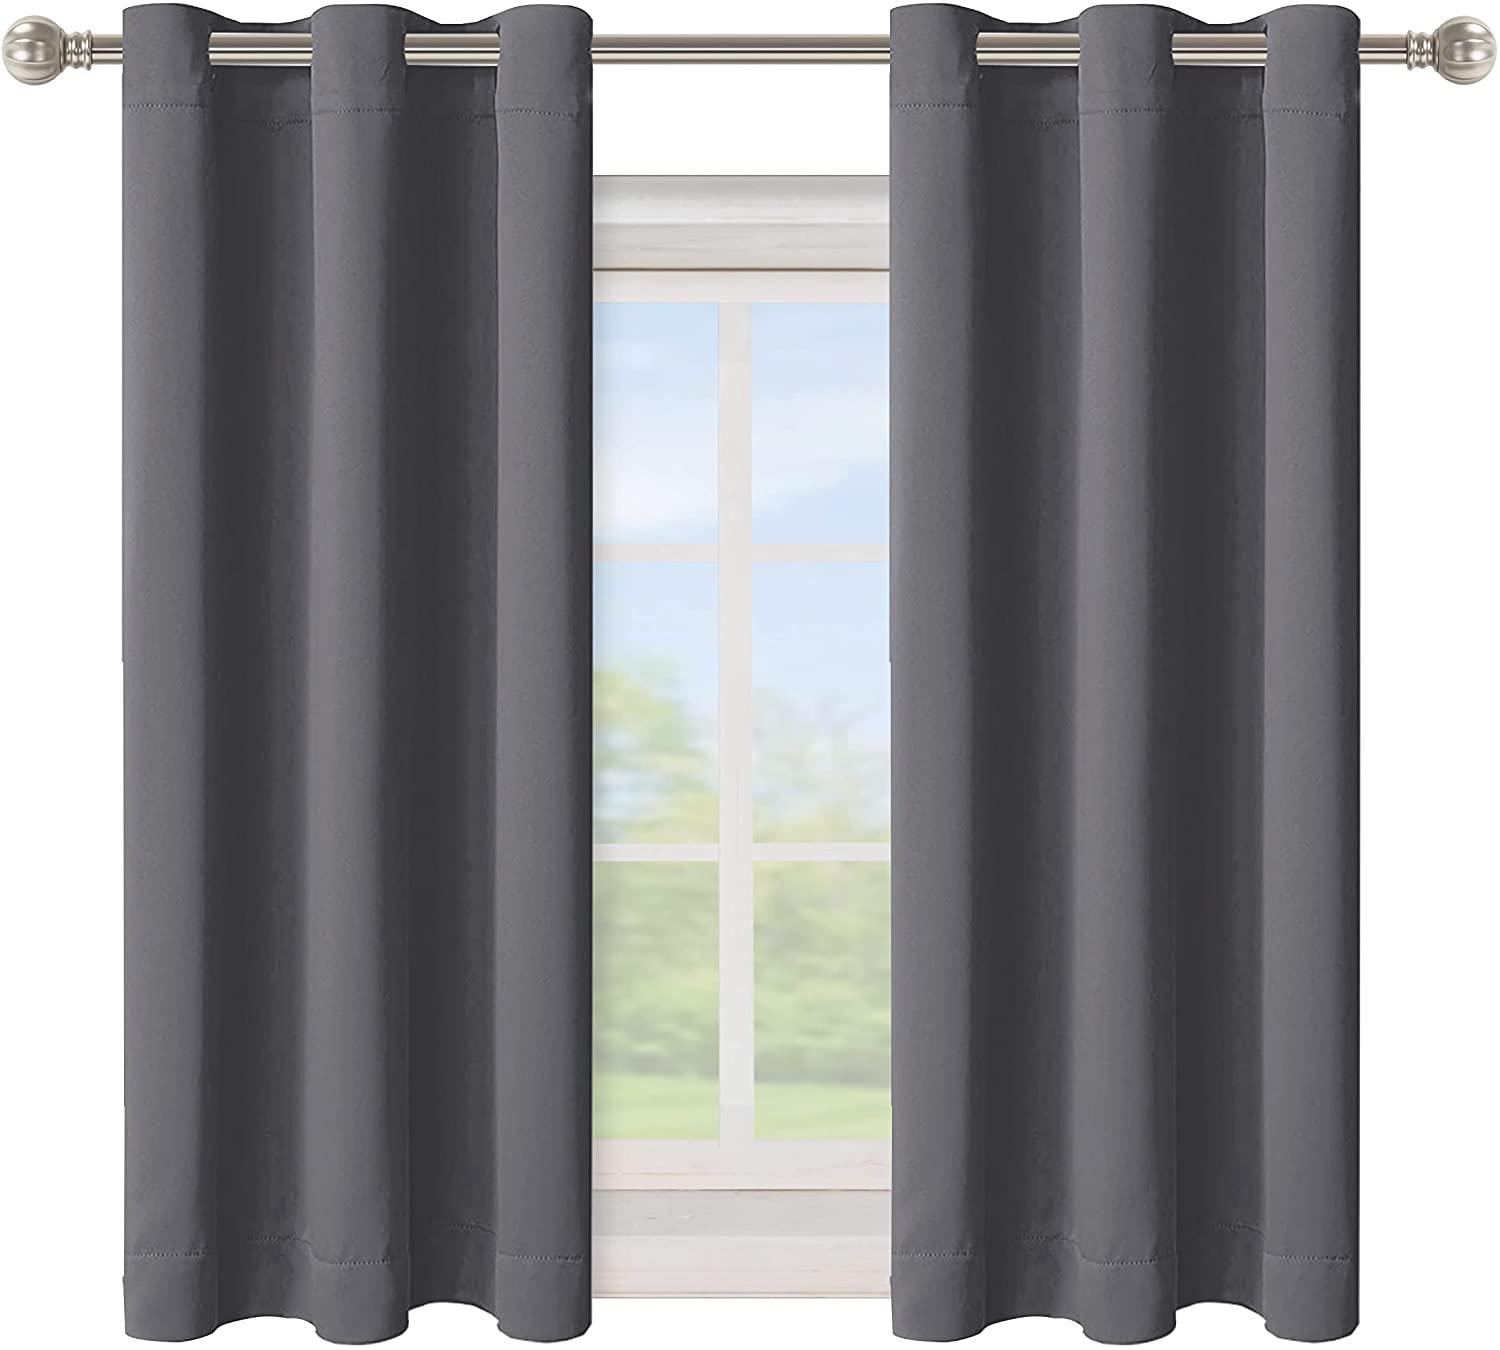 Bonzer Grommet Blackout Curtains for Bedroom for $16.79